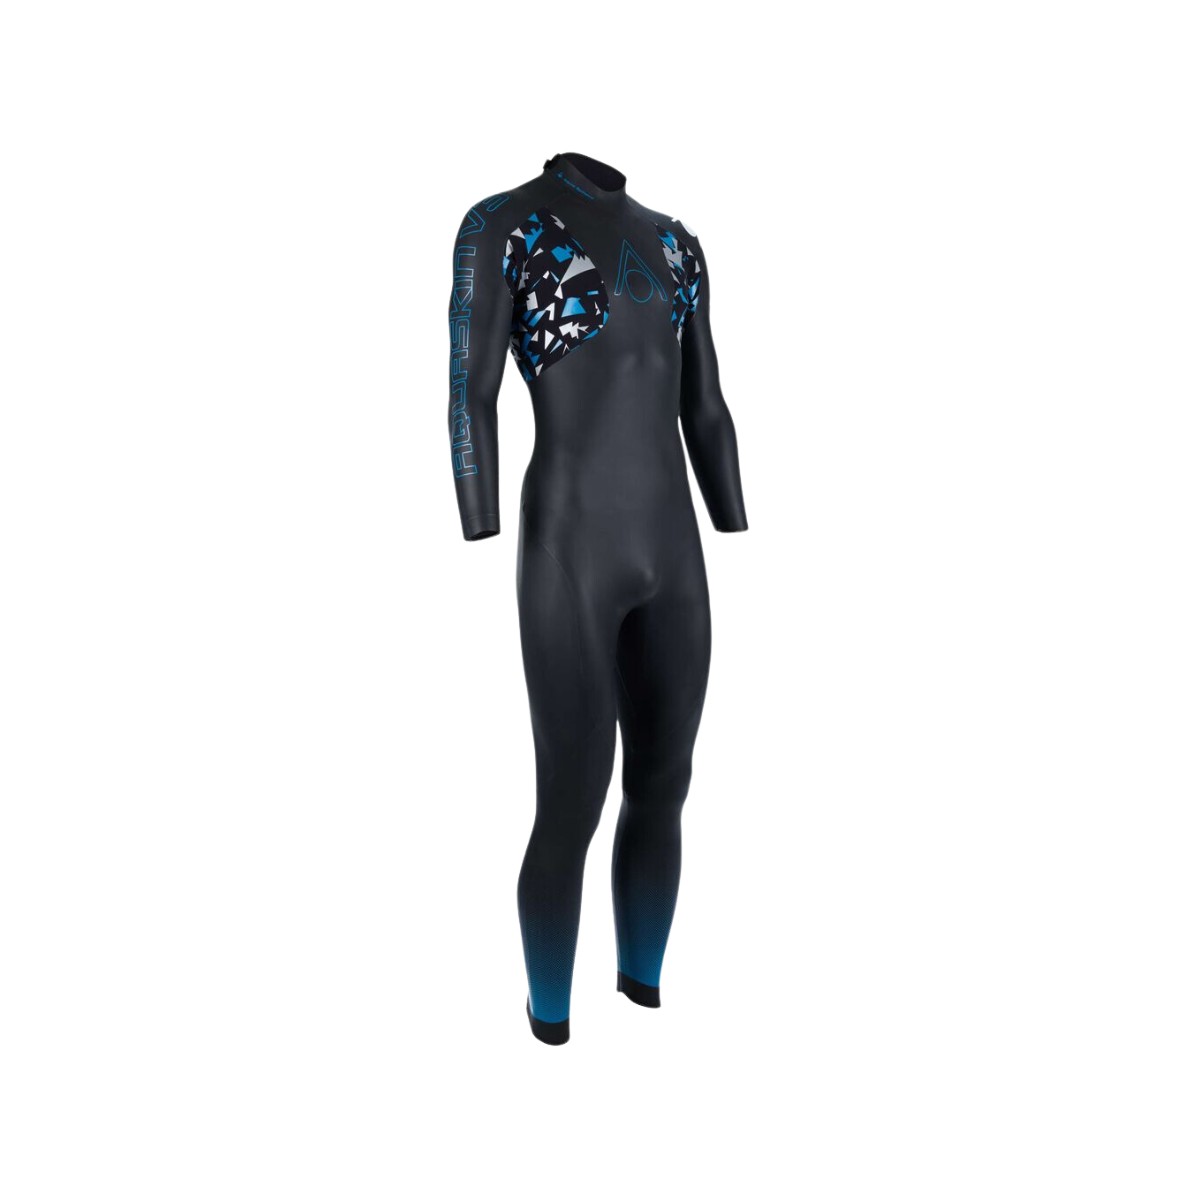 Combinaison Aquasphere Aquaskin Full Suit V3 Noir Turquoise, Taille XL product